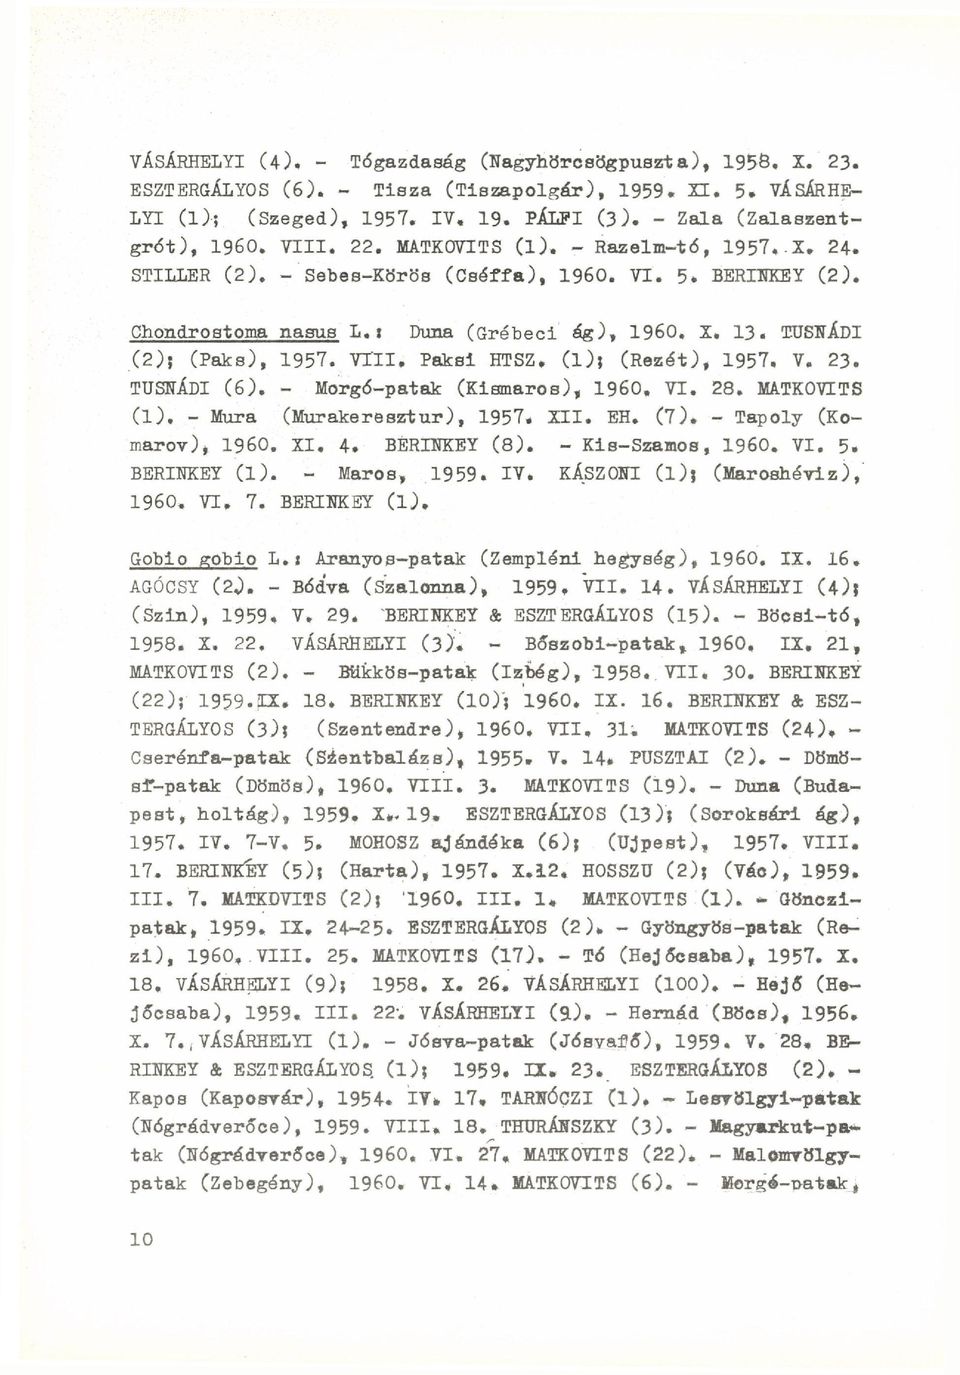 VTII* Paksi HTSZ. ( l ) ; (Rezét), 1957. V. 23. TUSNÁDI (6). - Morgó-patak (Kismaros), I960. VI. 28. MATKOVITS (1). - Mura (Murakeresztur), 1957. XII. EH. (7). - Tapoly (Komarov), I960. XI, 4.